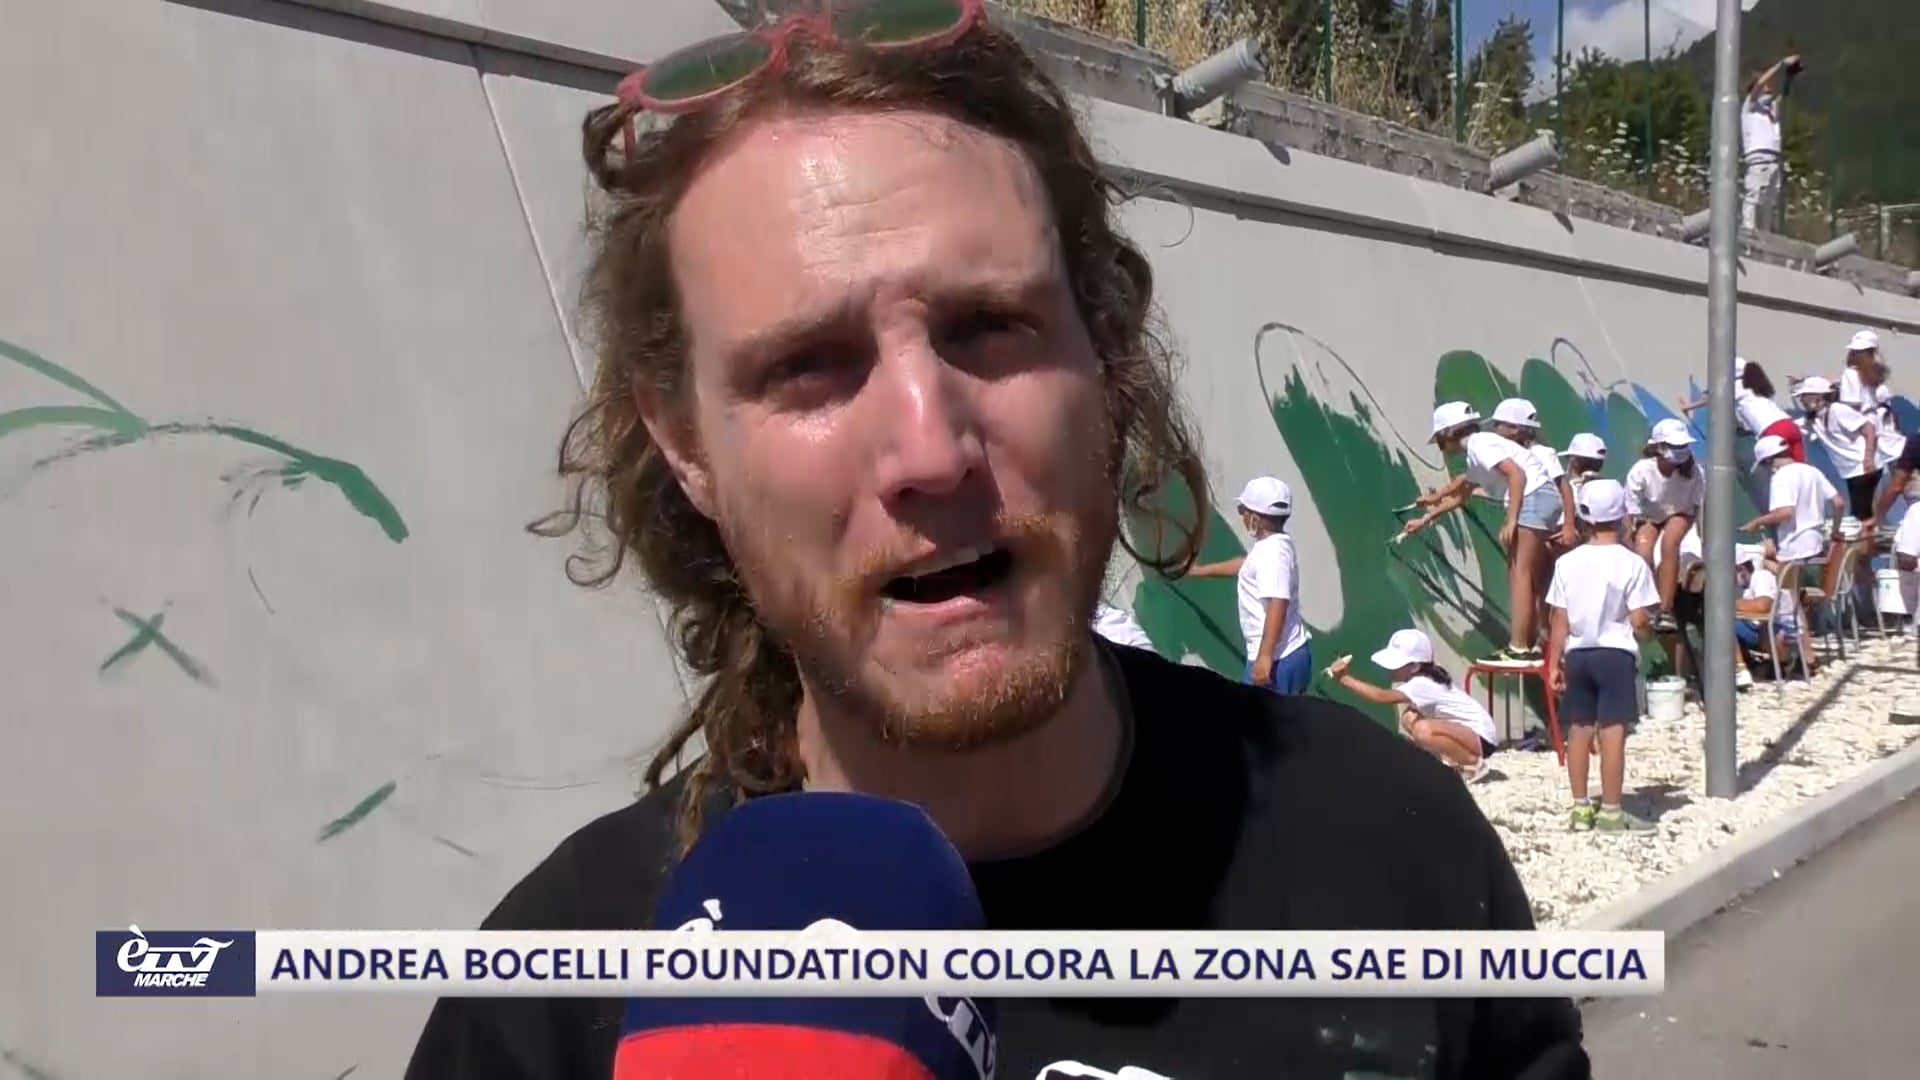 Andrea Bocelli Foundation colora la zona Sae di Muccia